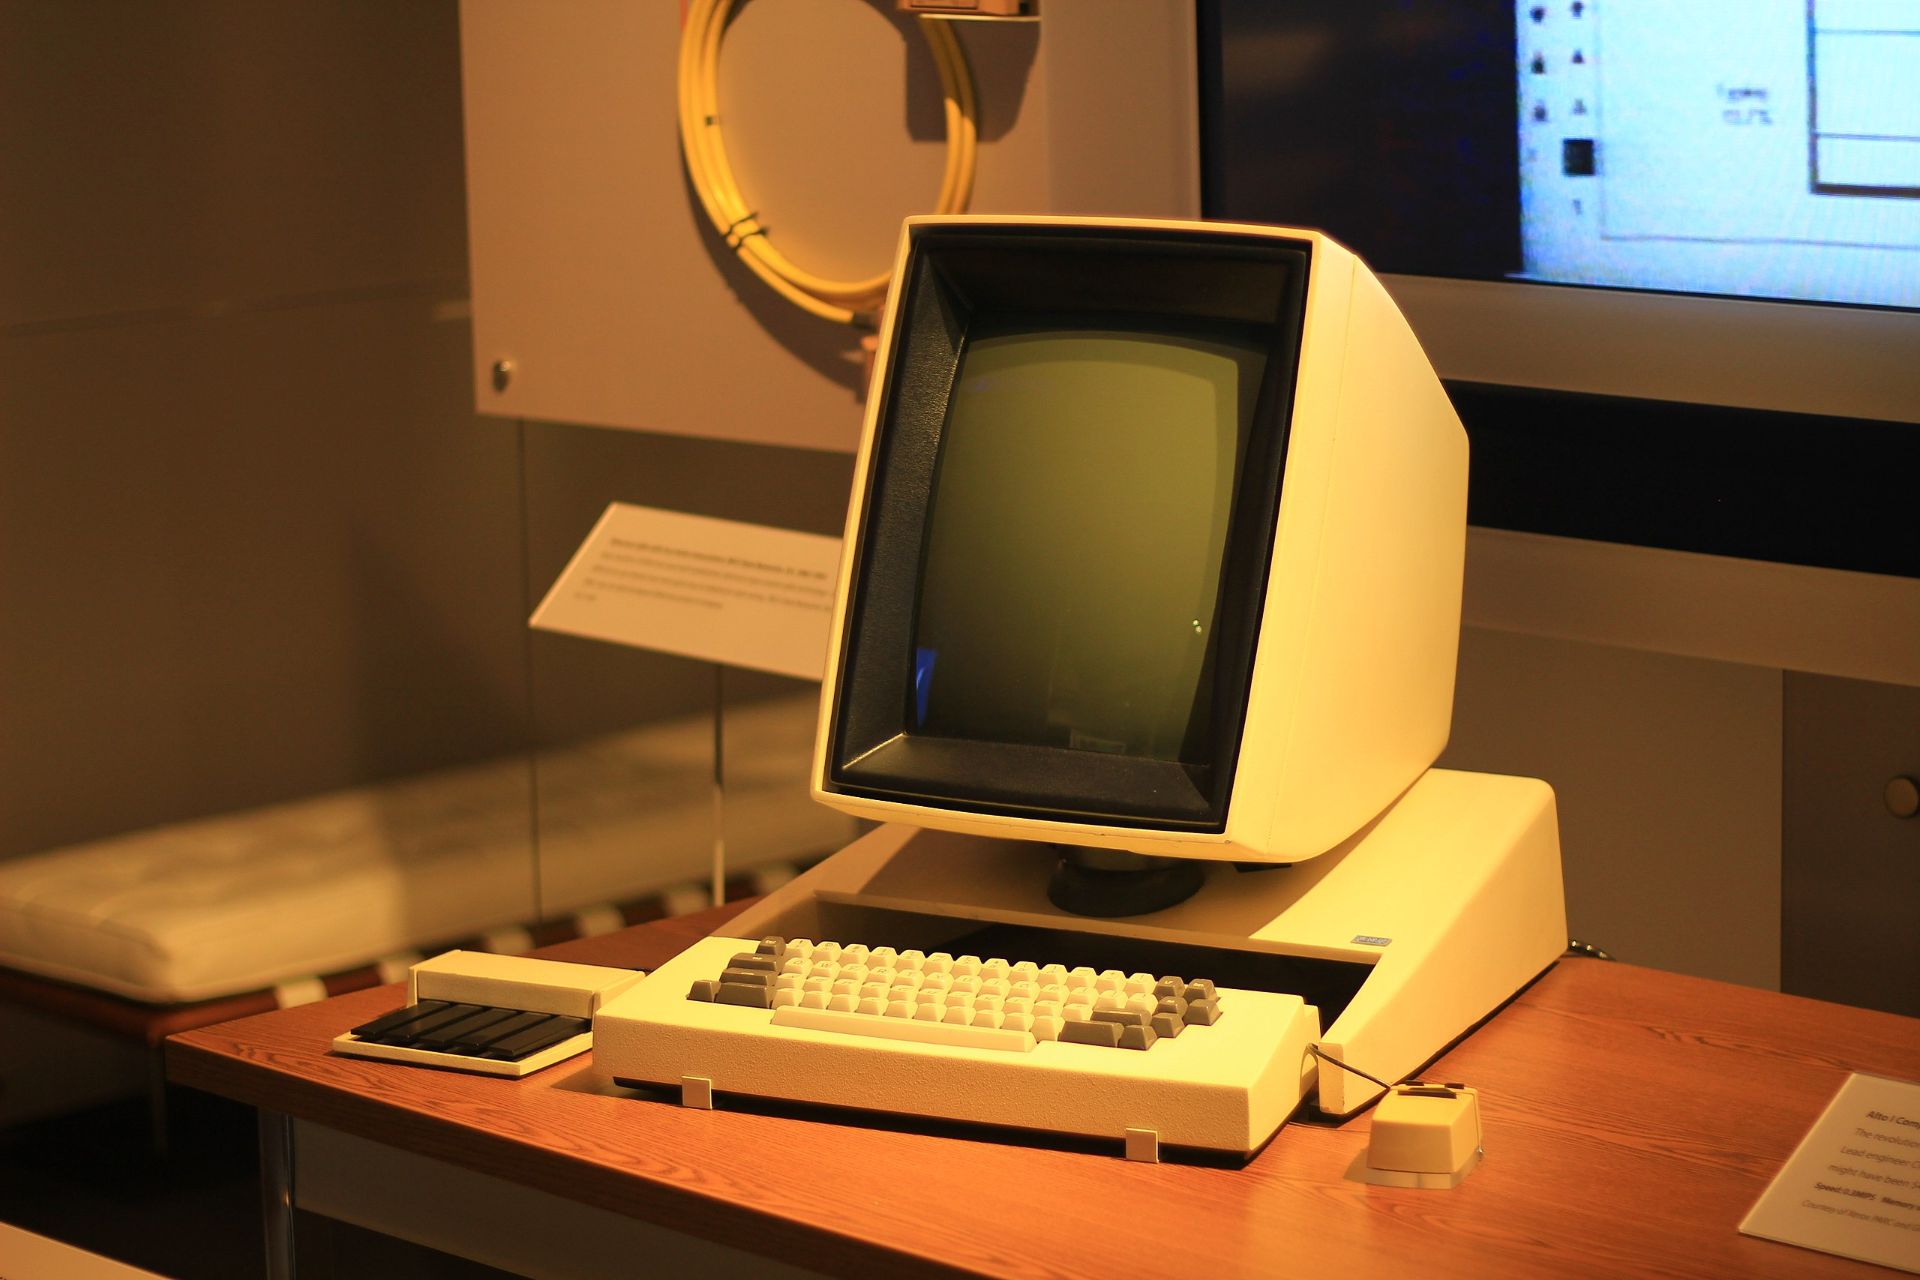 زیراکس آلتو - اولین کامپیوتر مجهز به نمایشگر